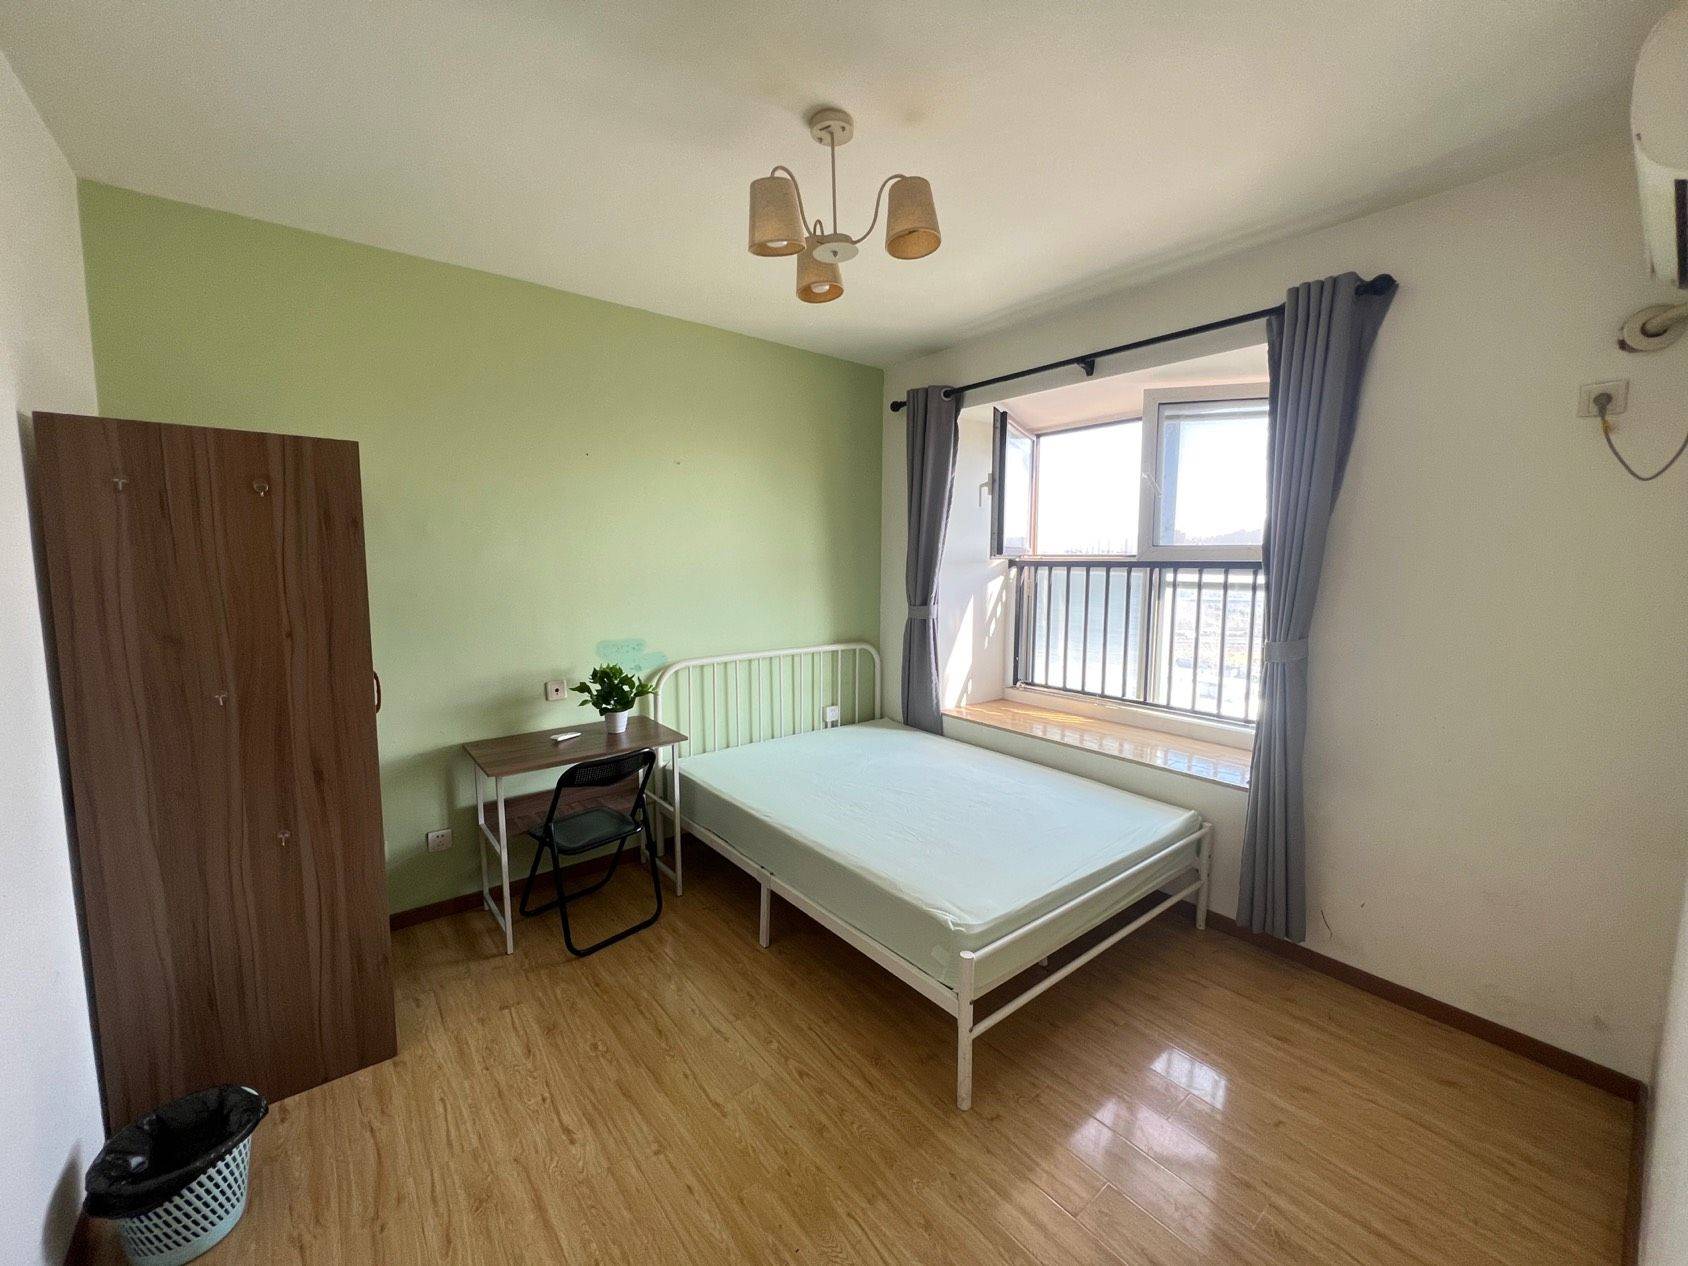 Nanjing-Qixia-Cozy Home,Clean&Comfy,No Gender Limit